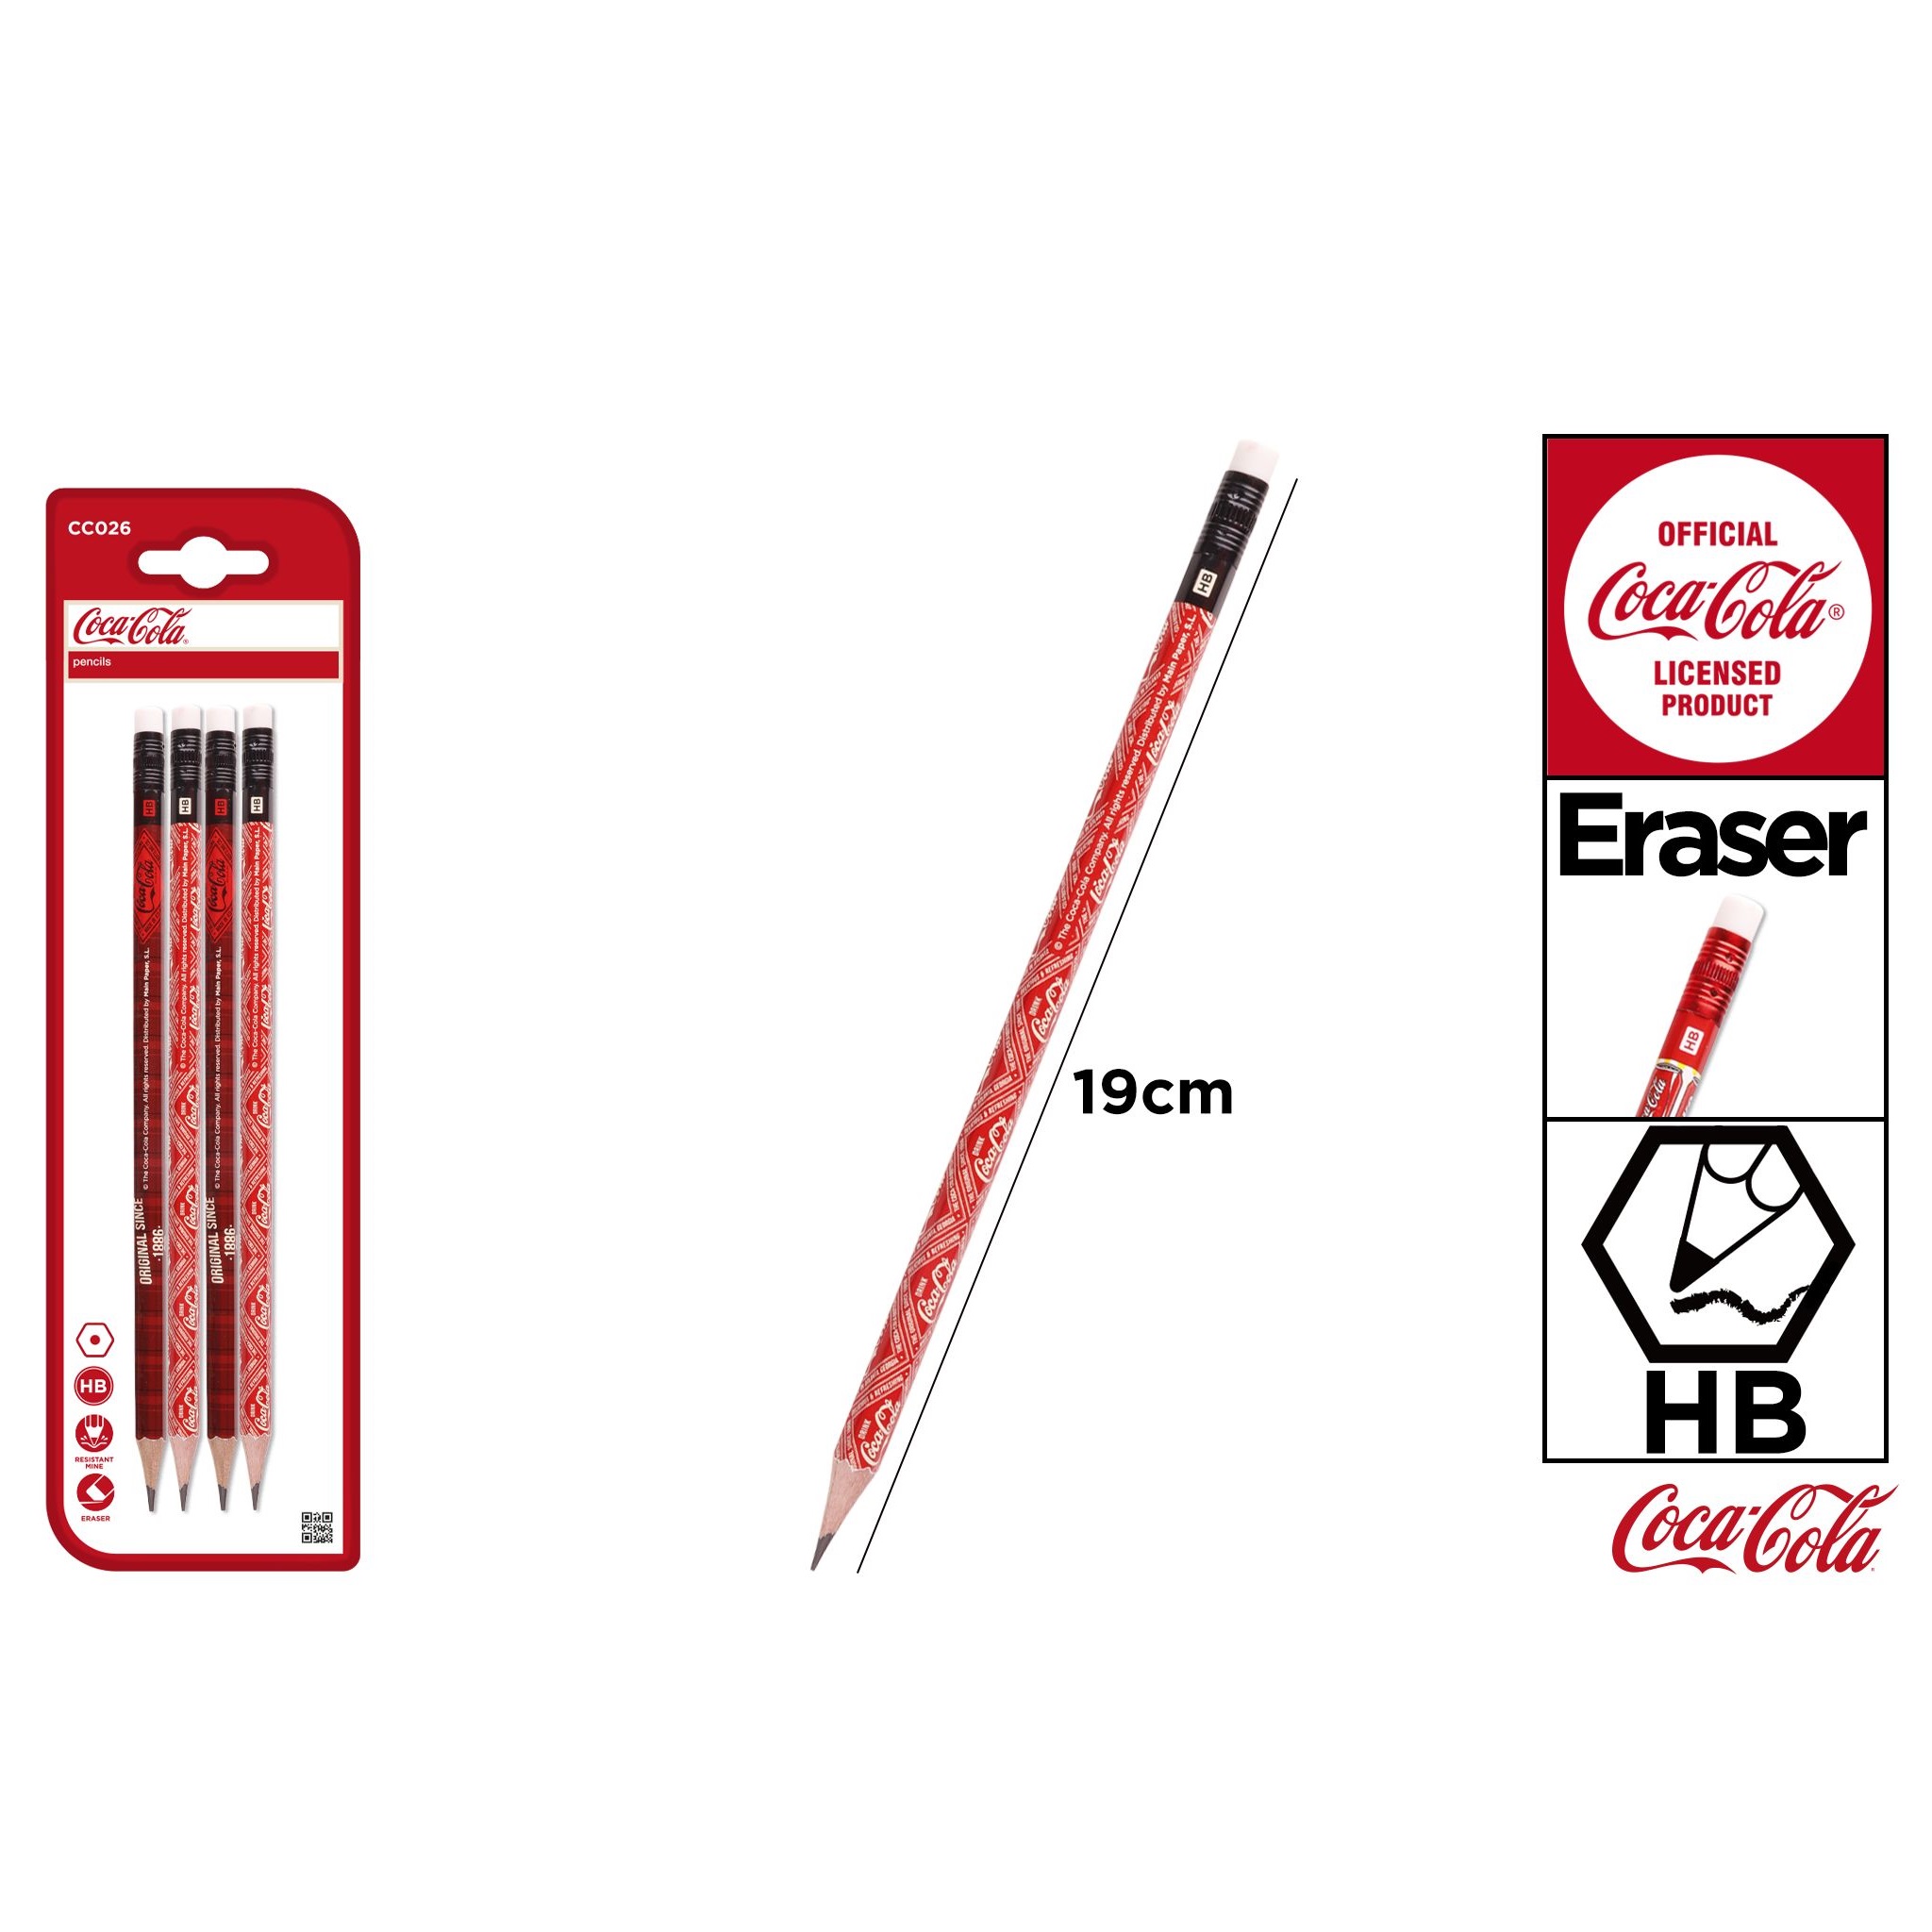 CC026 Graphite Pencils Coca-Cola Co-Branded Pencils Set of 4 with Eraser